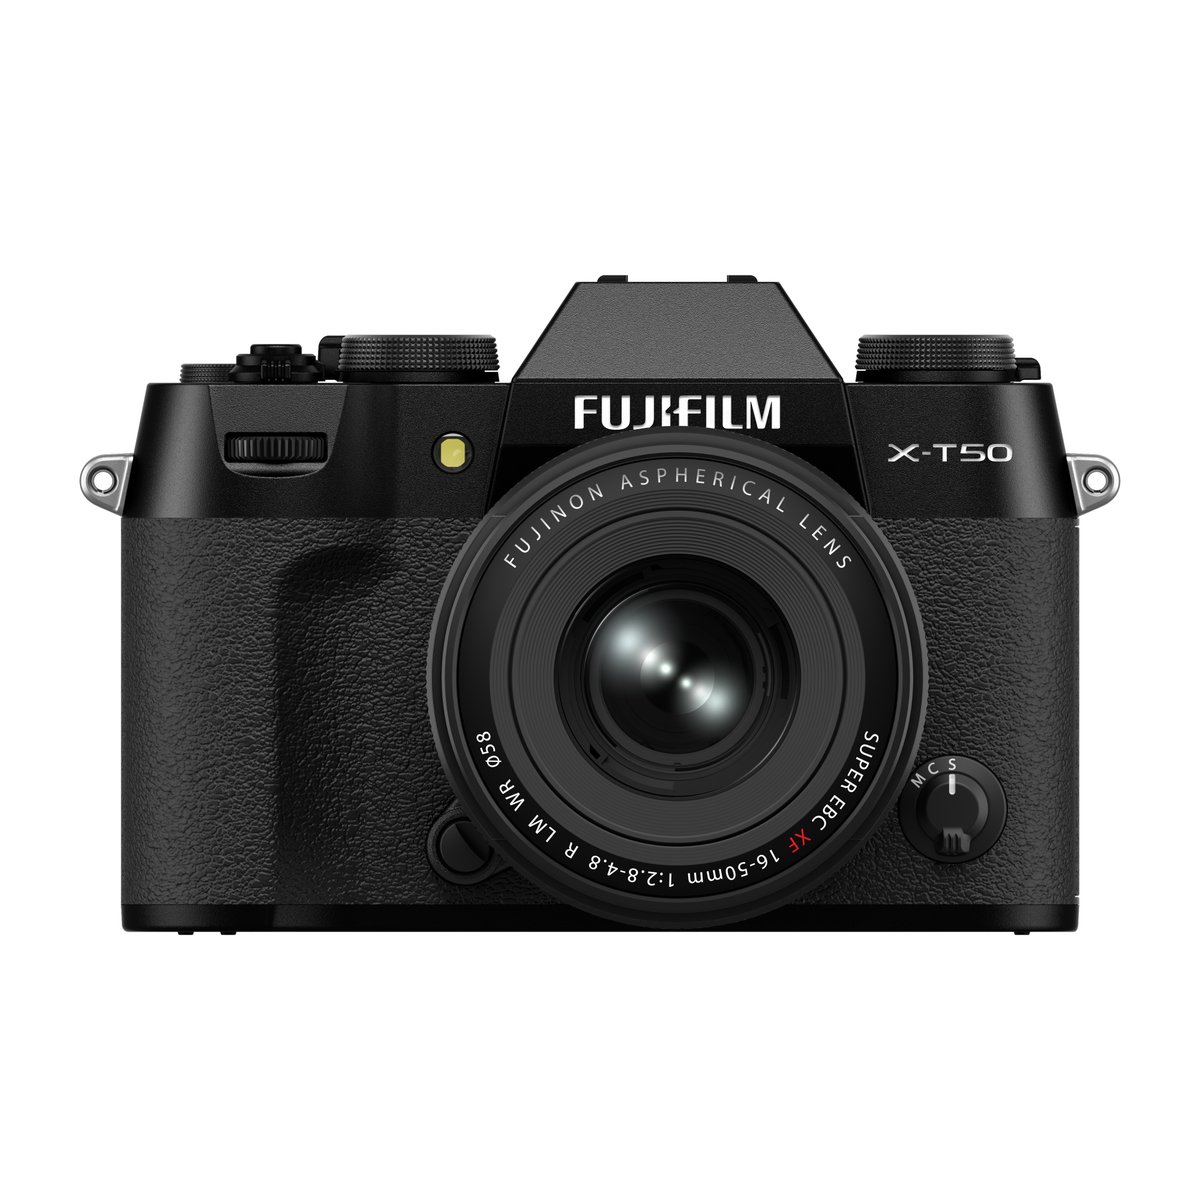 【報道発表】当社は、卓越した画質と小型軽量を実現する「Xシリーズ」の最新モデルとして、ミラーレスデジタルカメラ「FUJIFILM X-T50」を2024年6月より発売します。fujifilm.com/jp/ja/news/lis…
「FUJIFILM X-T50」は、質量約438gの小型軽量ボディに高画質を実現する優れた機能を搭載した万能モデルです。